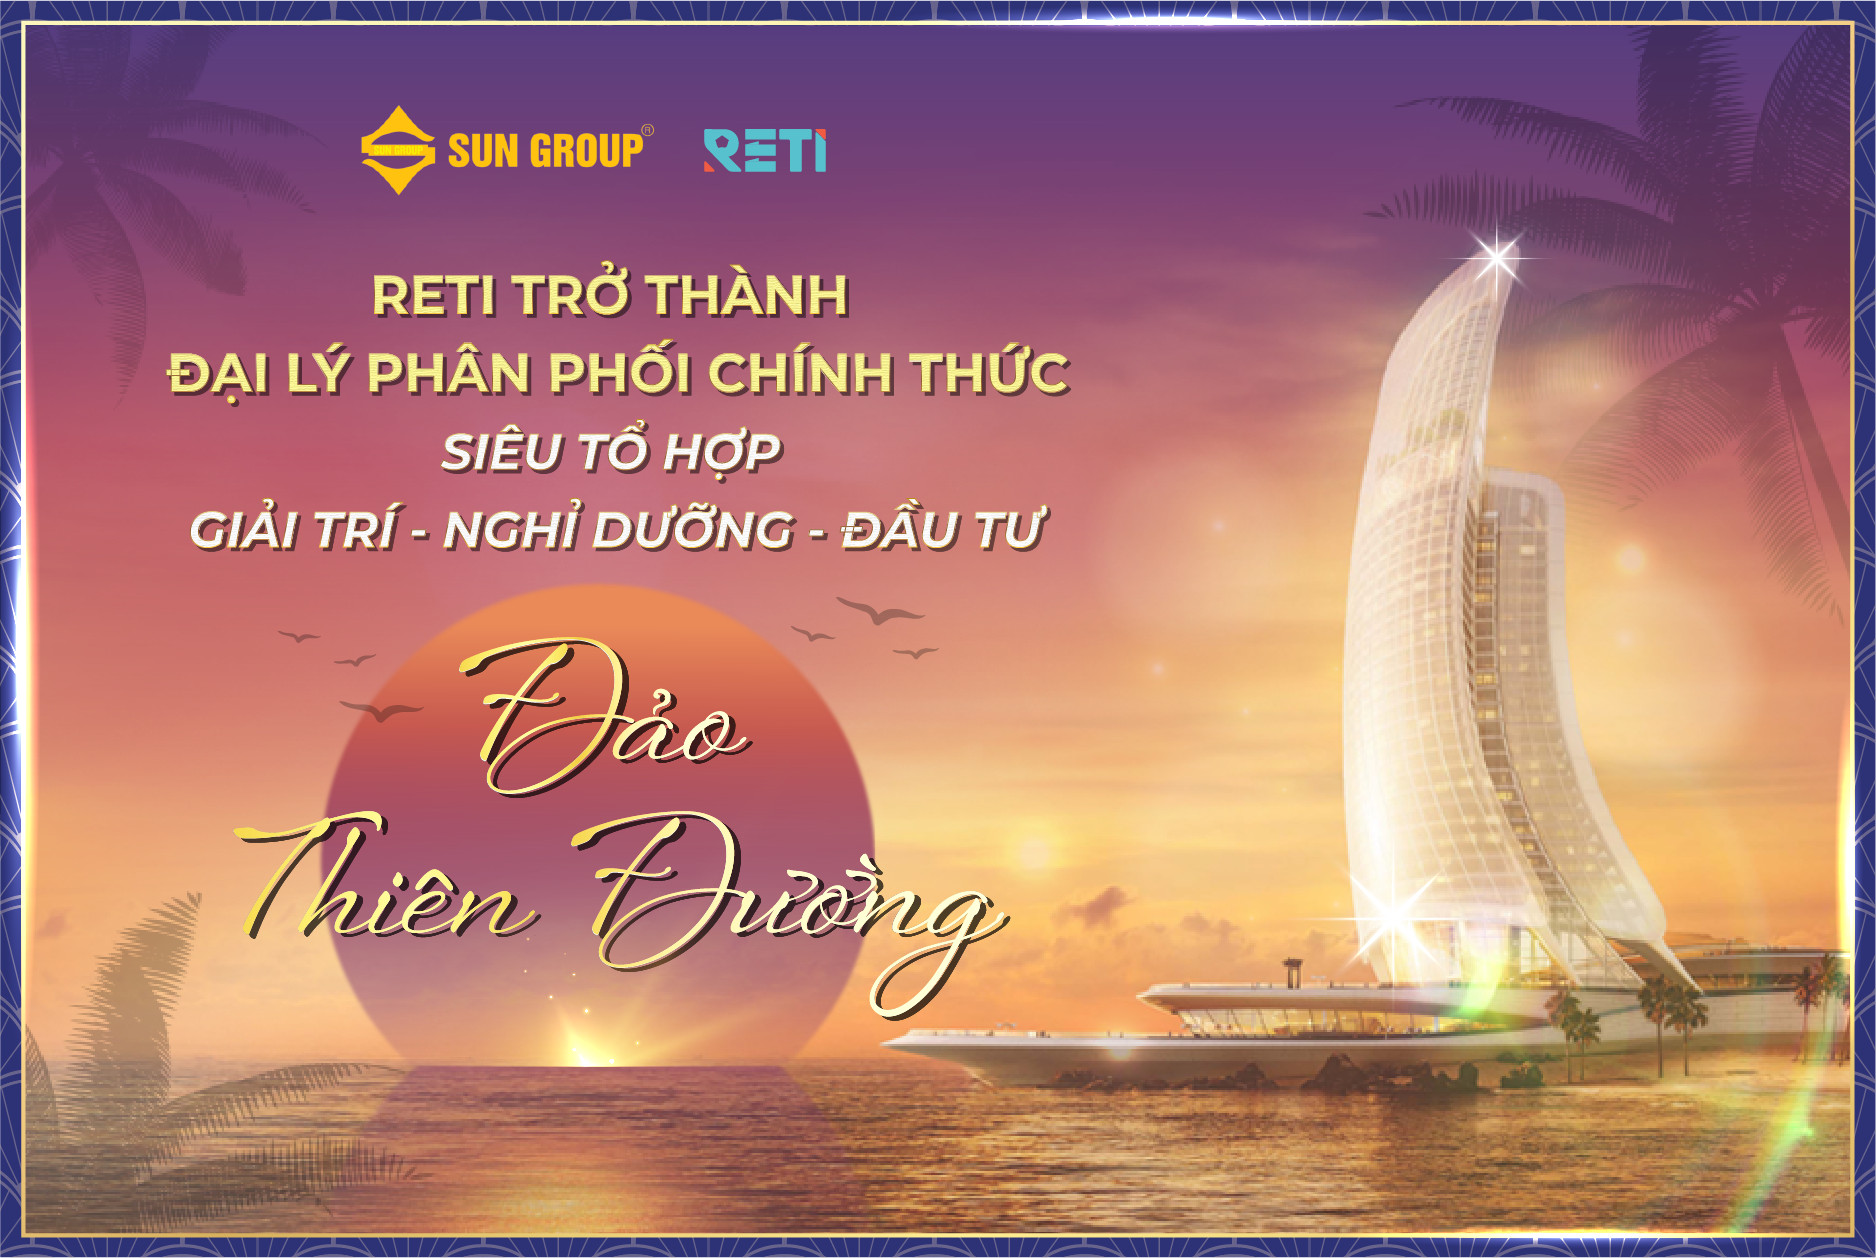 RETI – Đại lý chiến lược phân phối chính thức Siêu tổ hợp Giải trí – Nghỉ dưỡng – Đầu tư Hon Thom Paradise Island Phú Quốc của Tập đoàn Sun Group 1